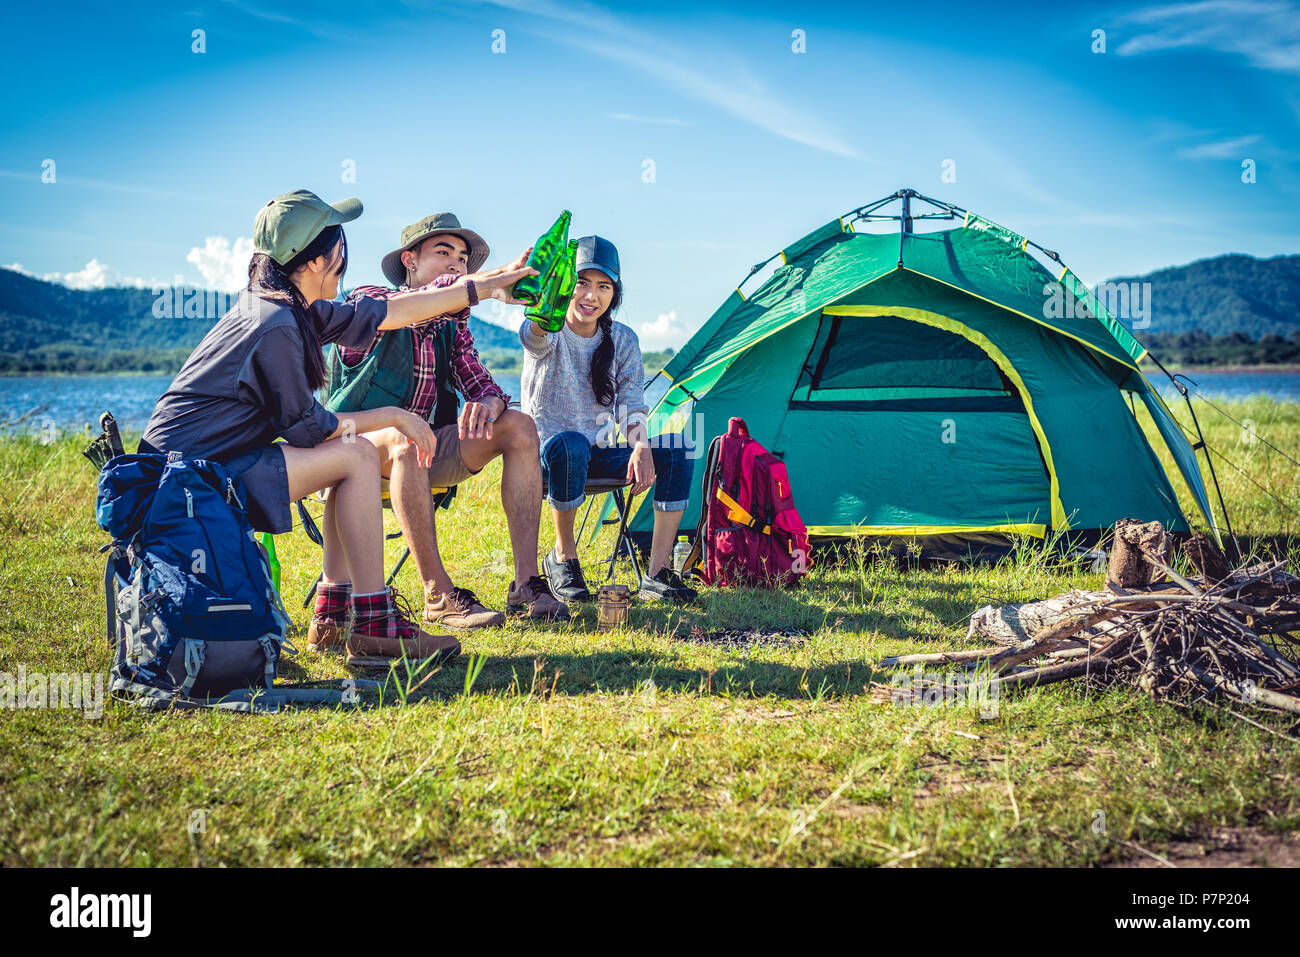 Groupe de jeunes amis asiatiques profiter de pique-nique et partie au lac avec camping Sac à dos et une chaise. Les jeunes toasting et acclamer bouteilles de bière. Peopl Banque D'Images